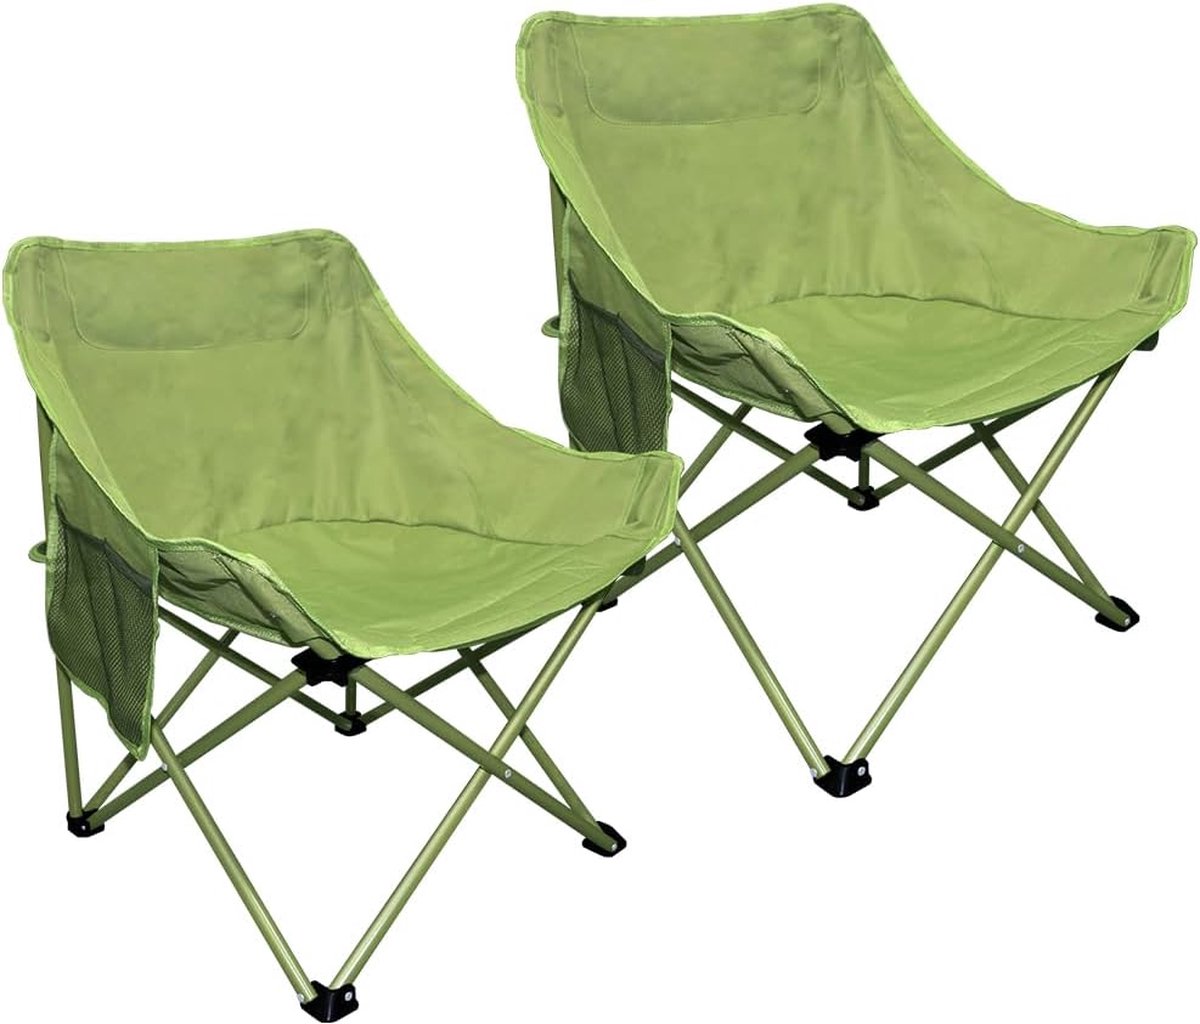 2 stuks inklapbare campingstoelen, goed voor buiten, terras, tuin, picknick, strandvakantie, camperreizen, groen (4800437561923)